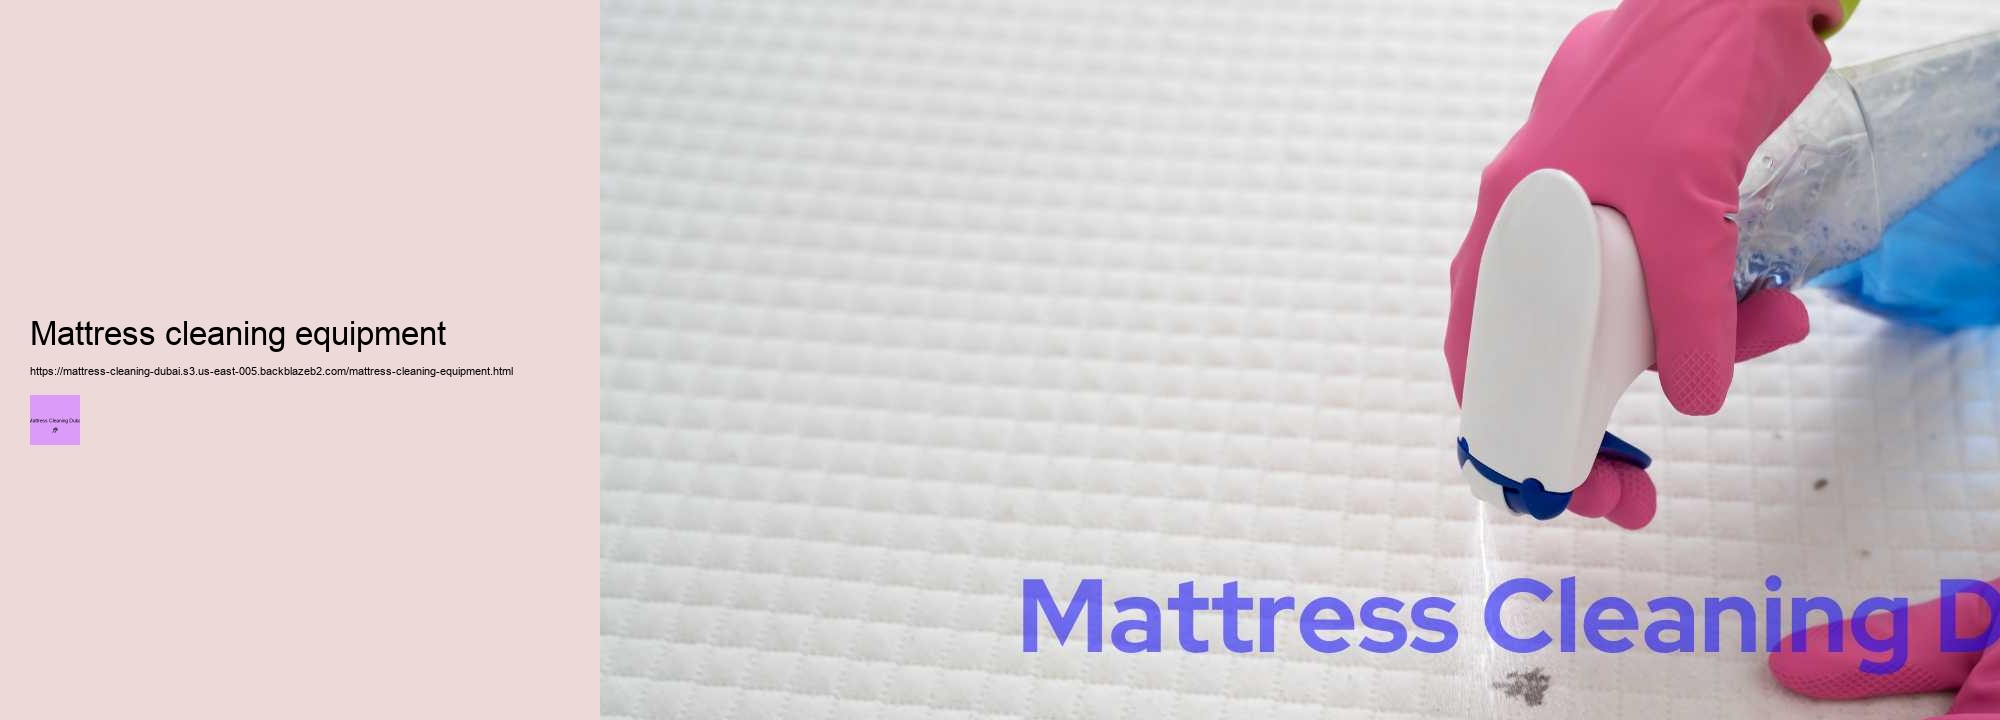 Mattress cleaning equipment